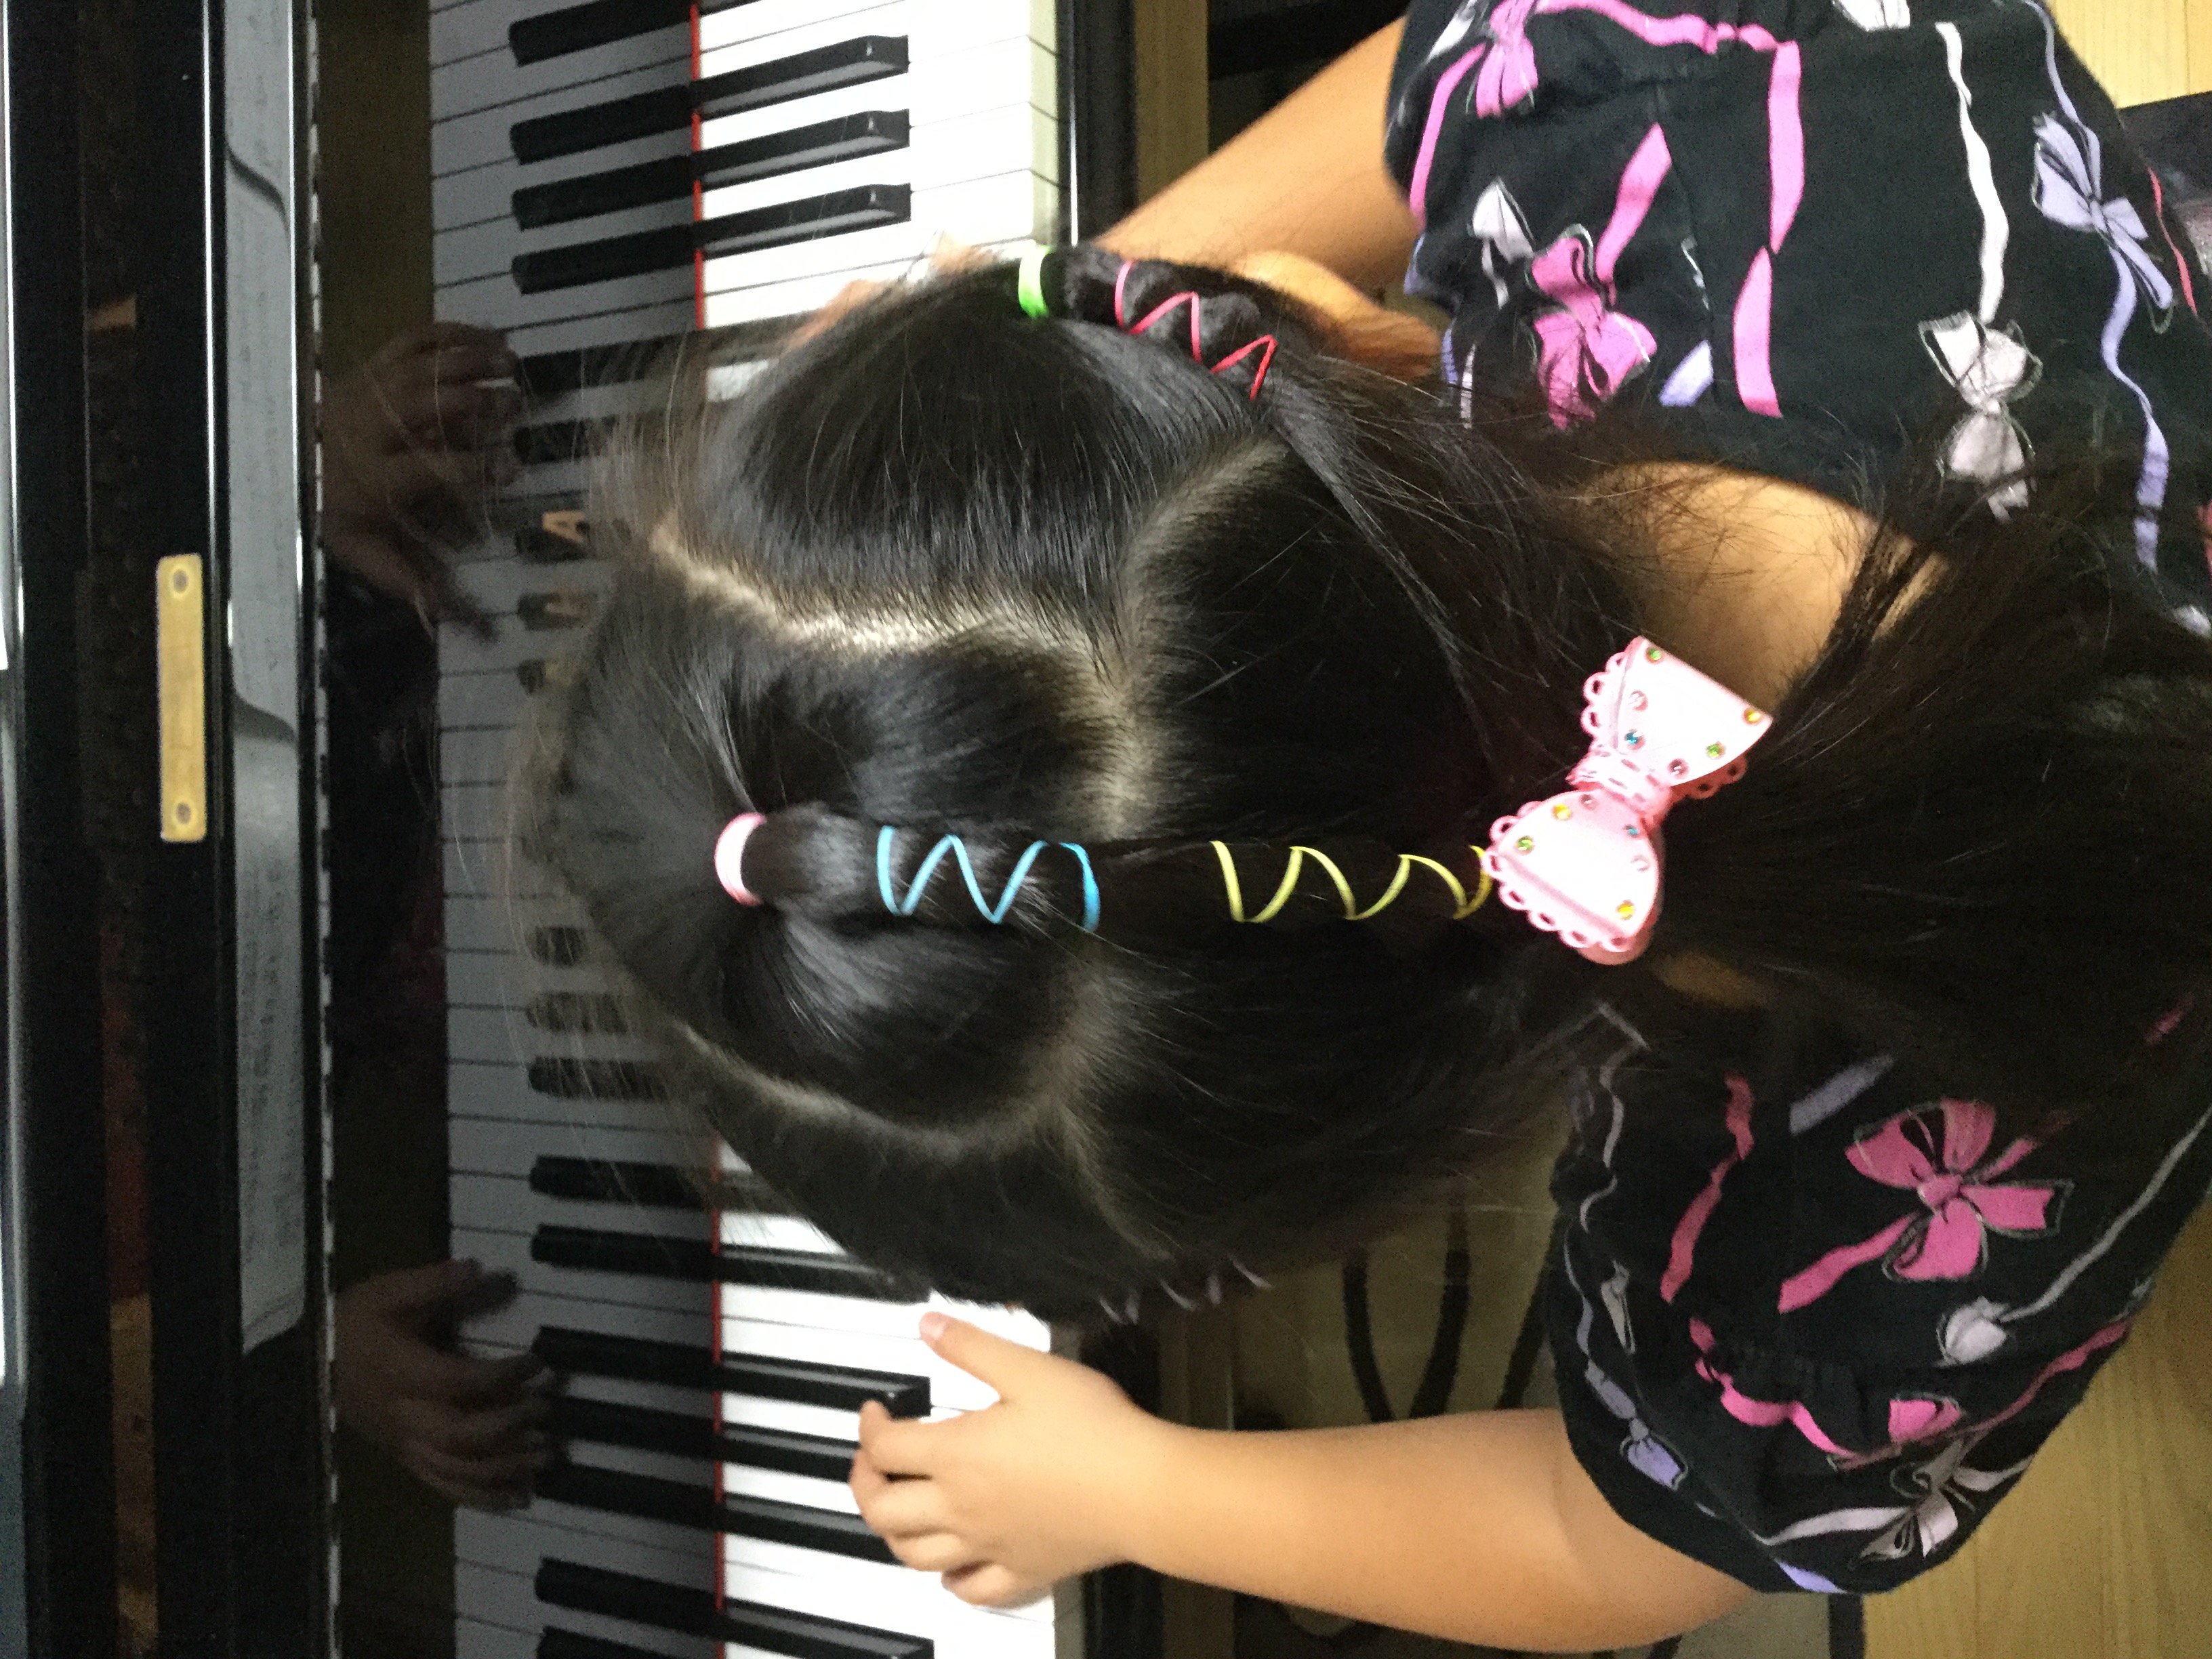 レンタルスペースピアノ松沢音楽教室の雰囲気がわかる写真